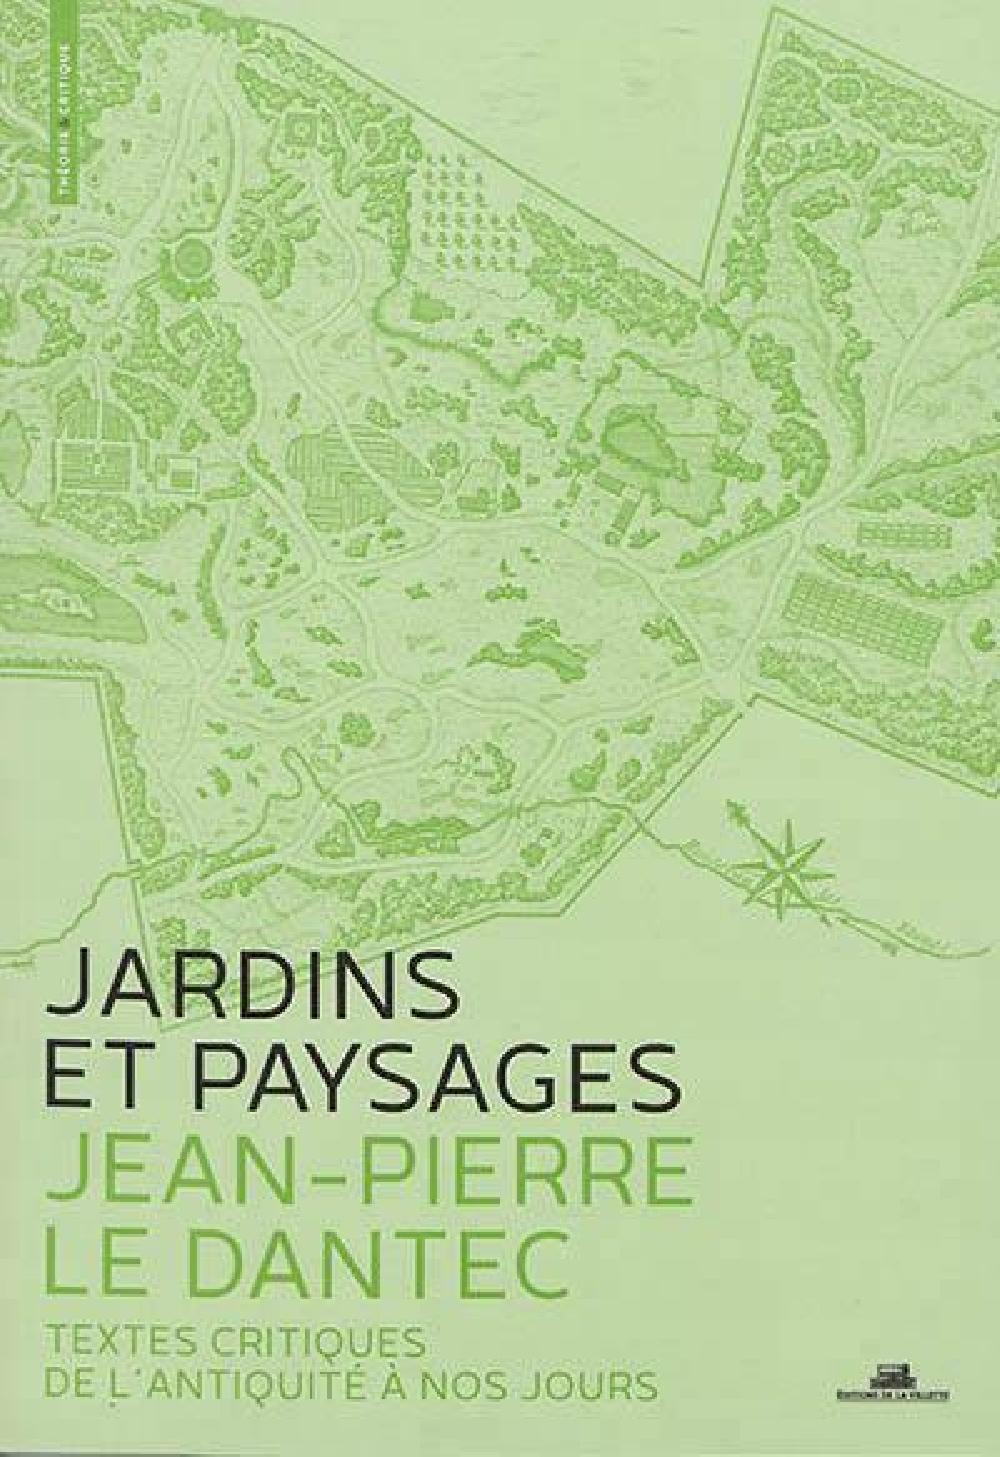 Jardins et paysages, une anthologie - Textes critiques de l'antiquité à nos jours